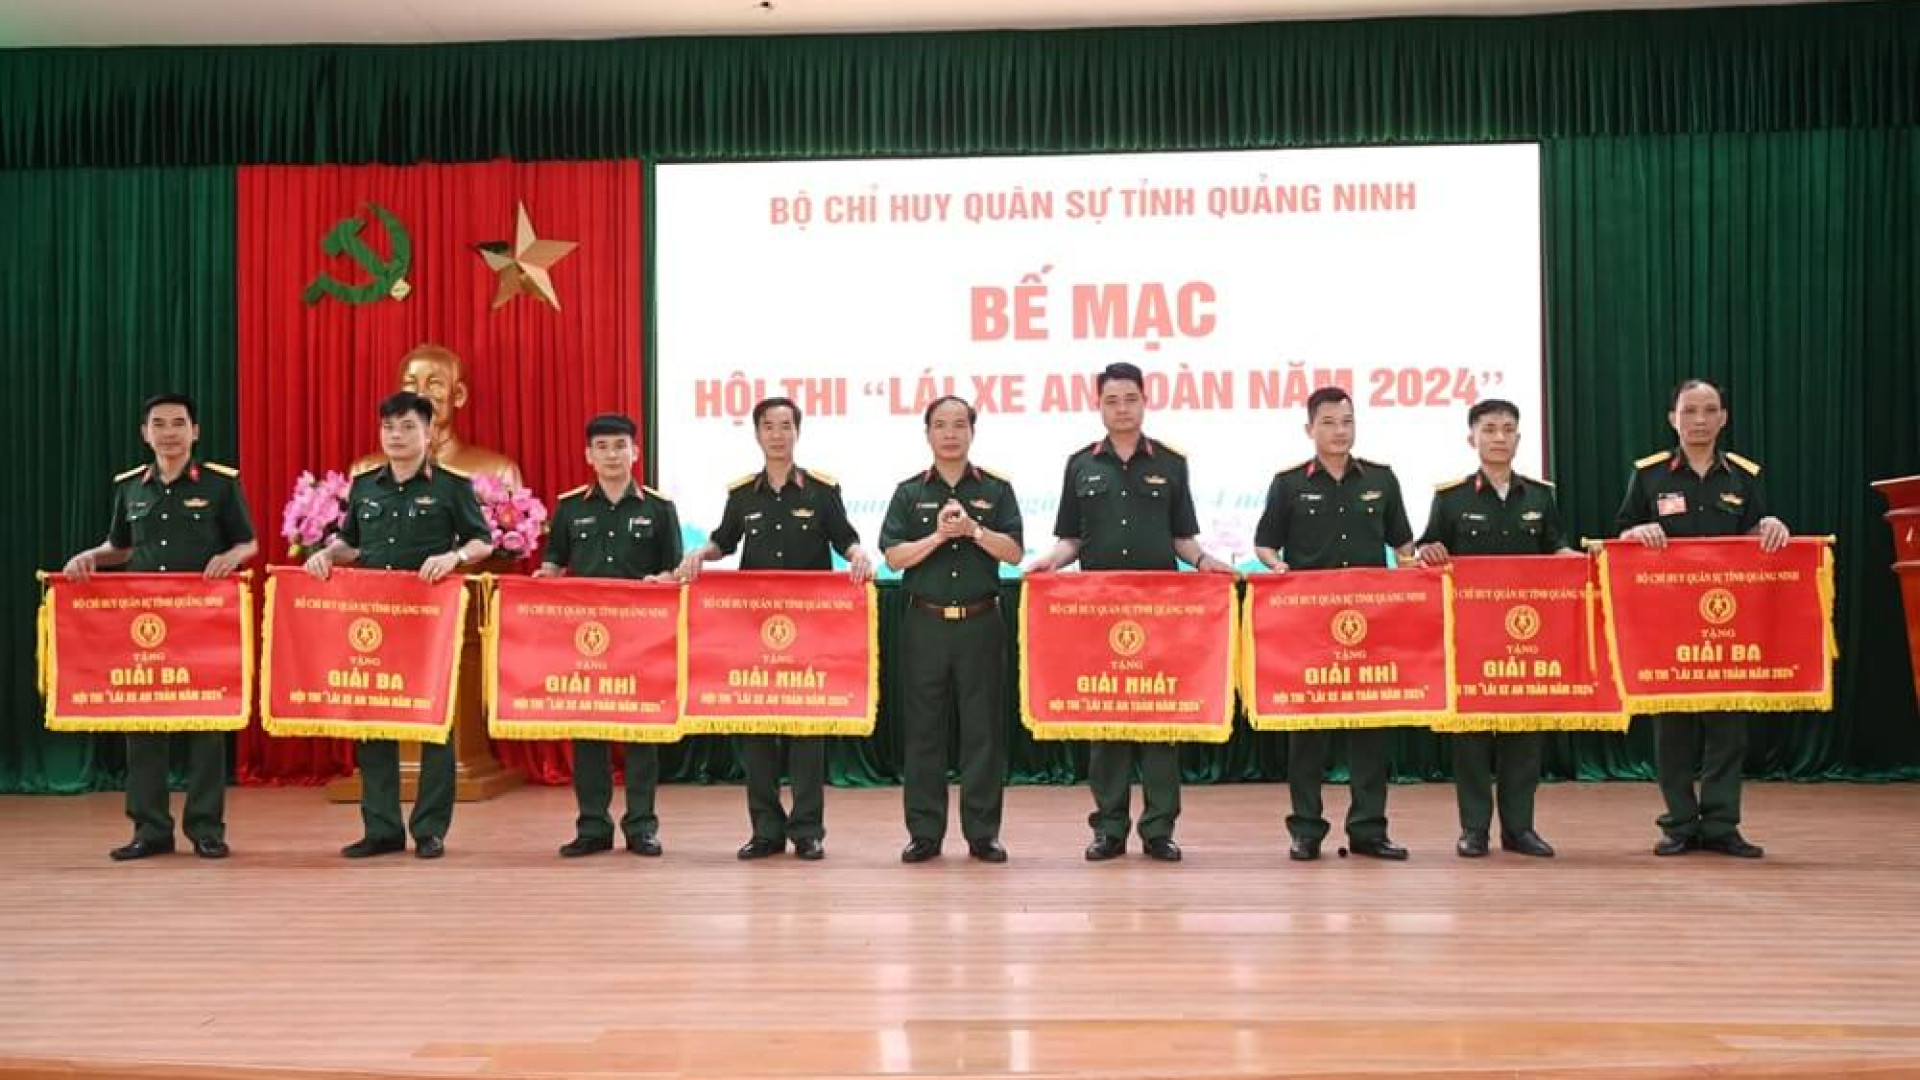 Bộ CHQS tỉnh Quảng Ninh thi lái xe an toàn năm 2024